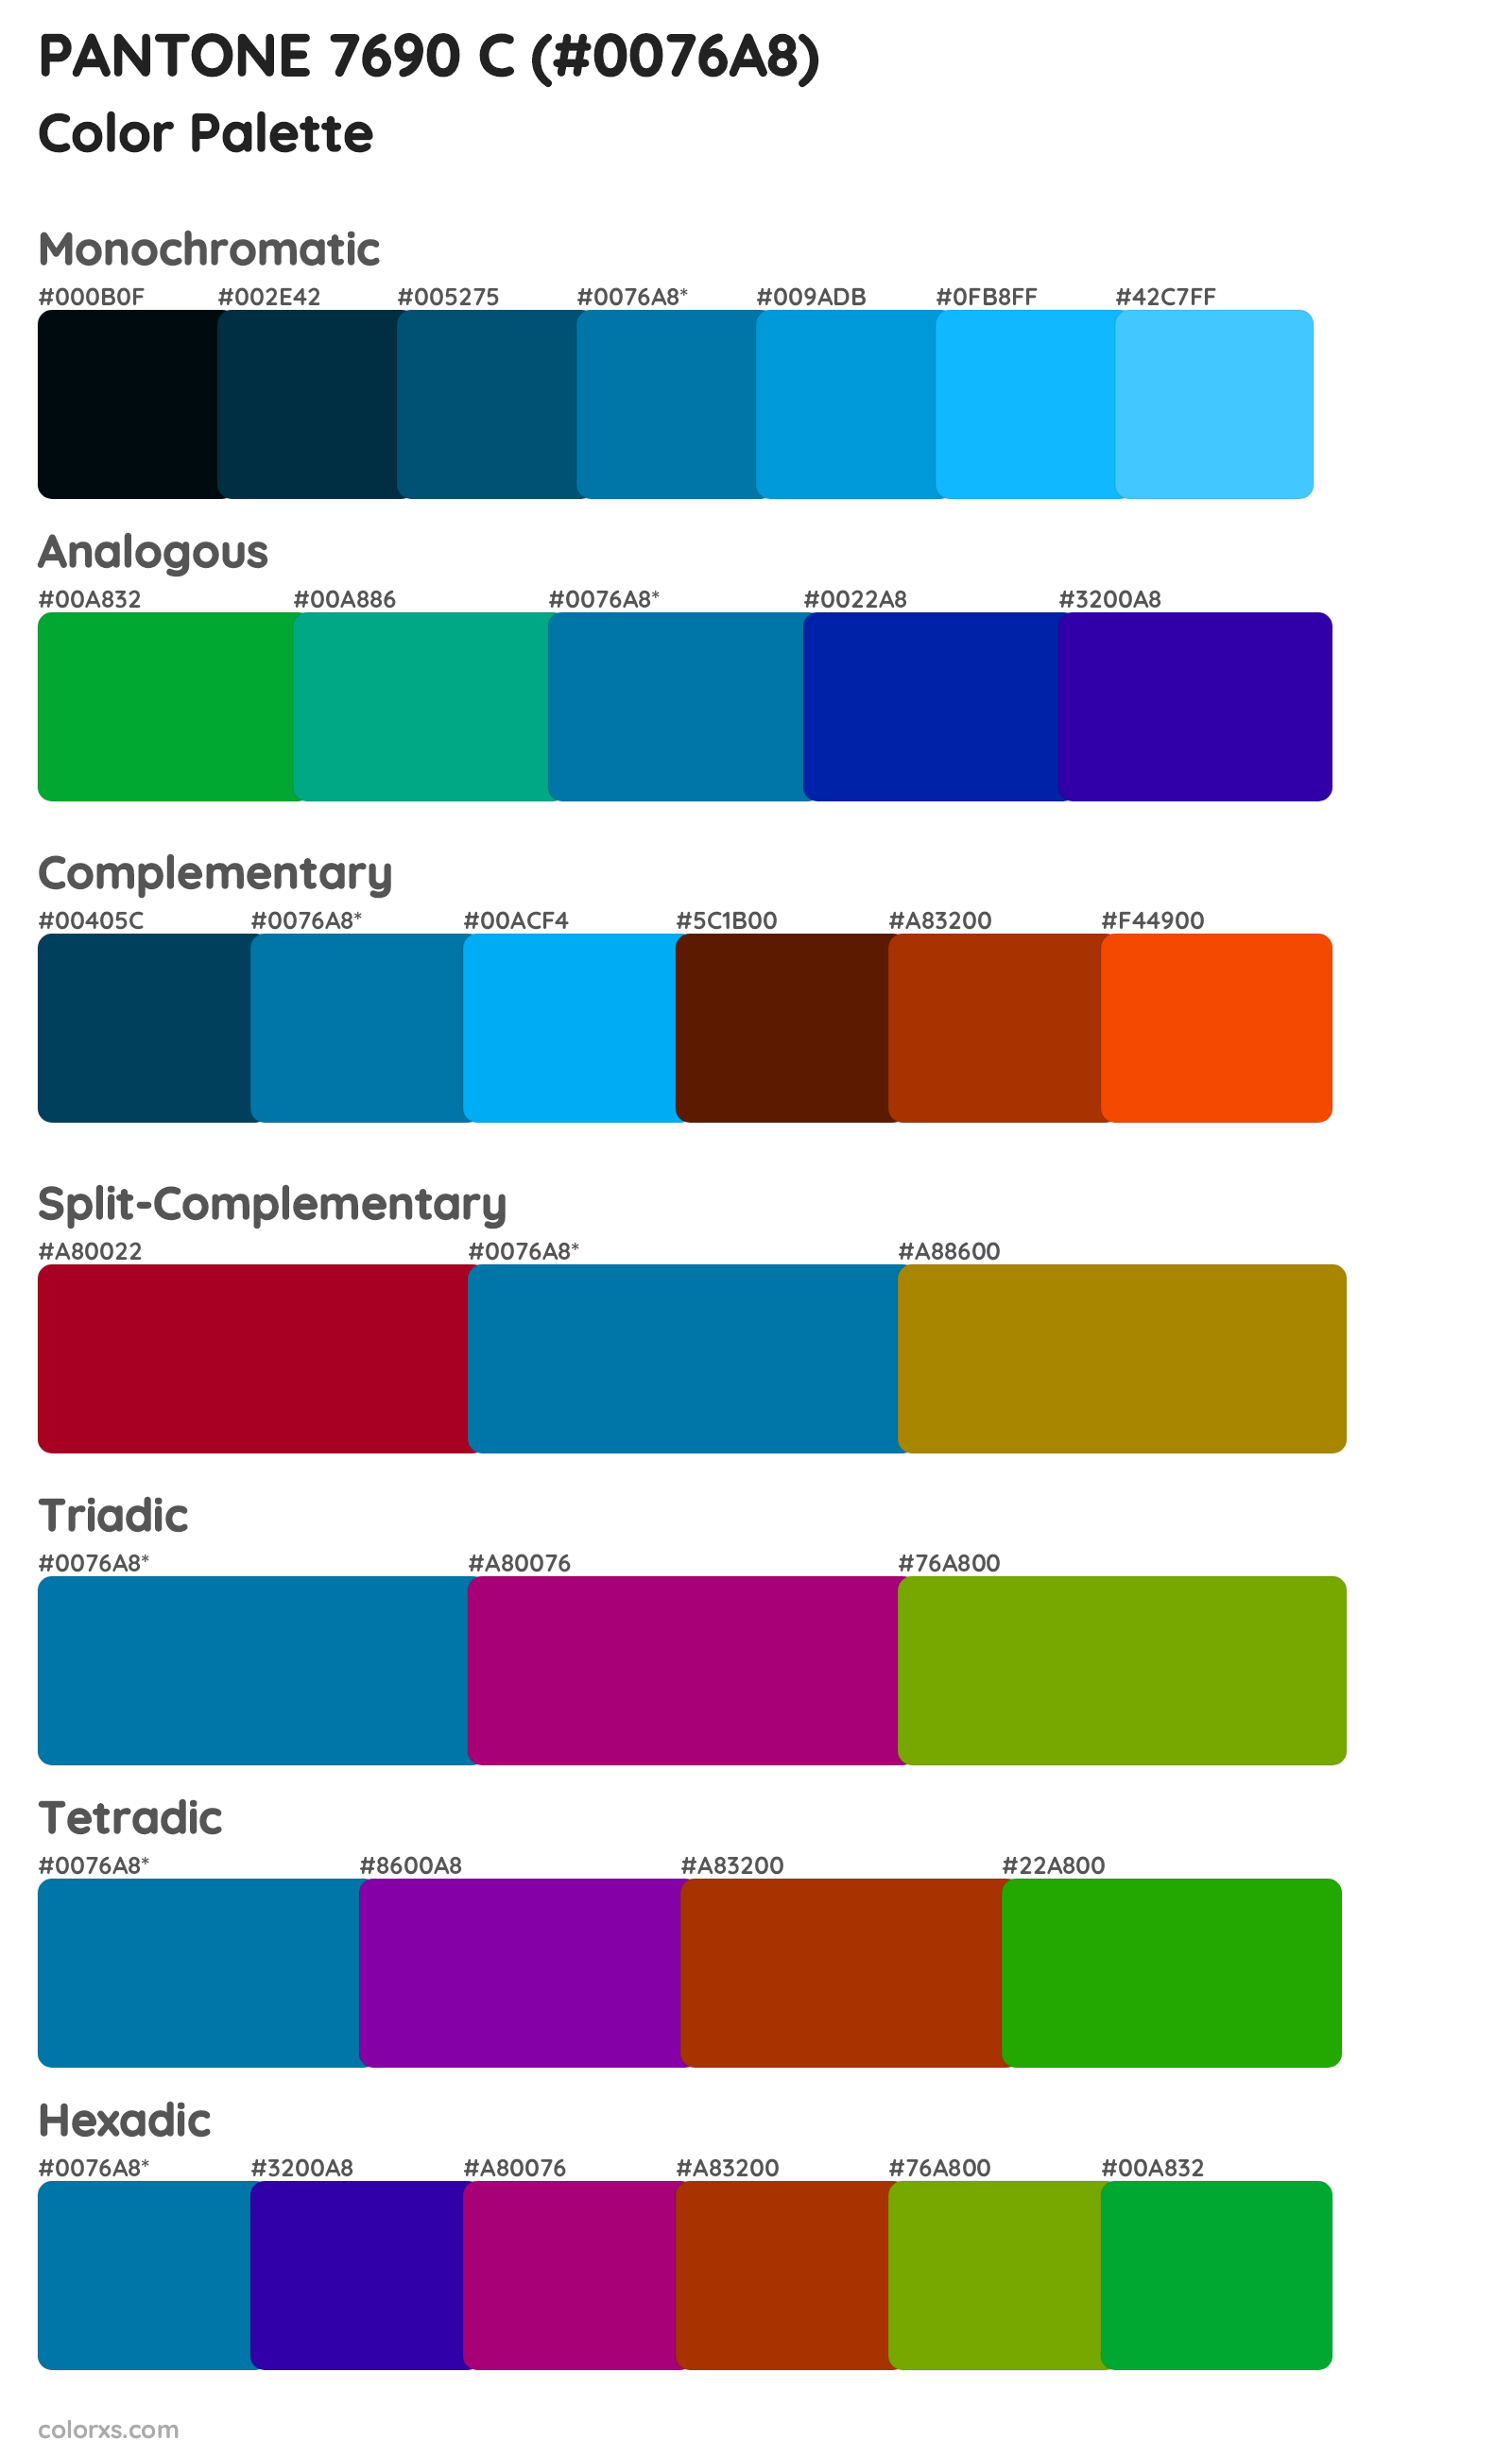 PANTONE 7690 C Color Scheme Palettes